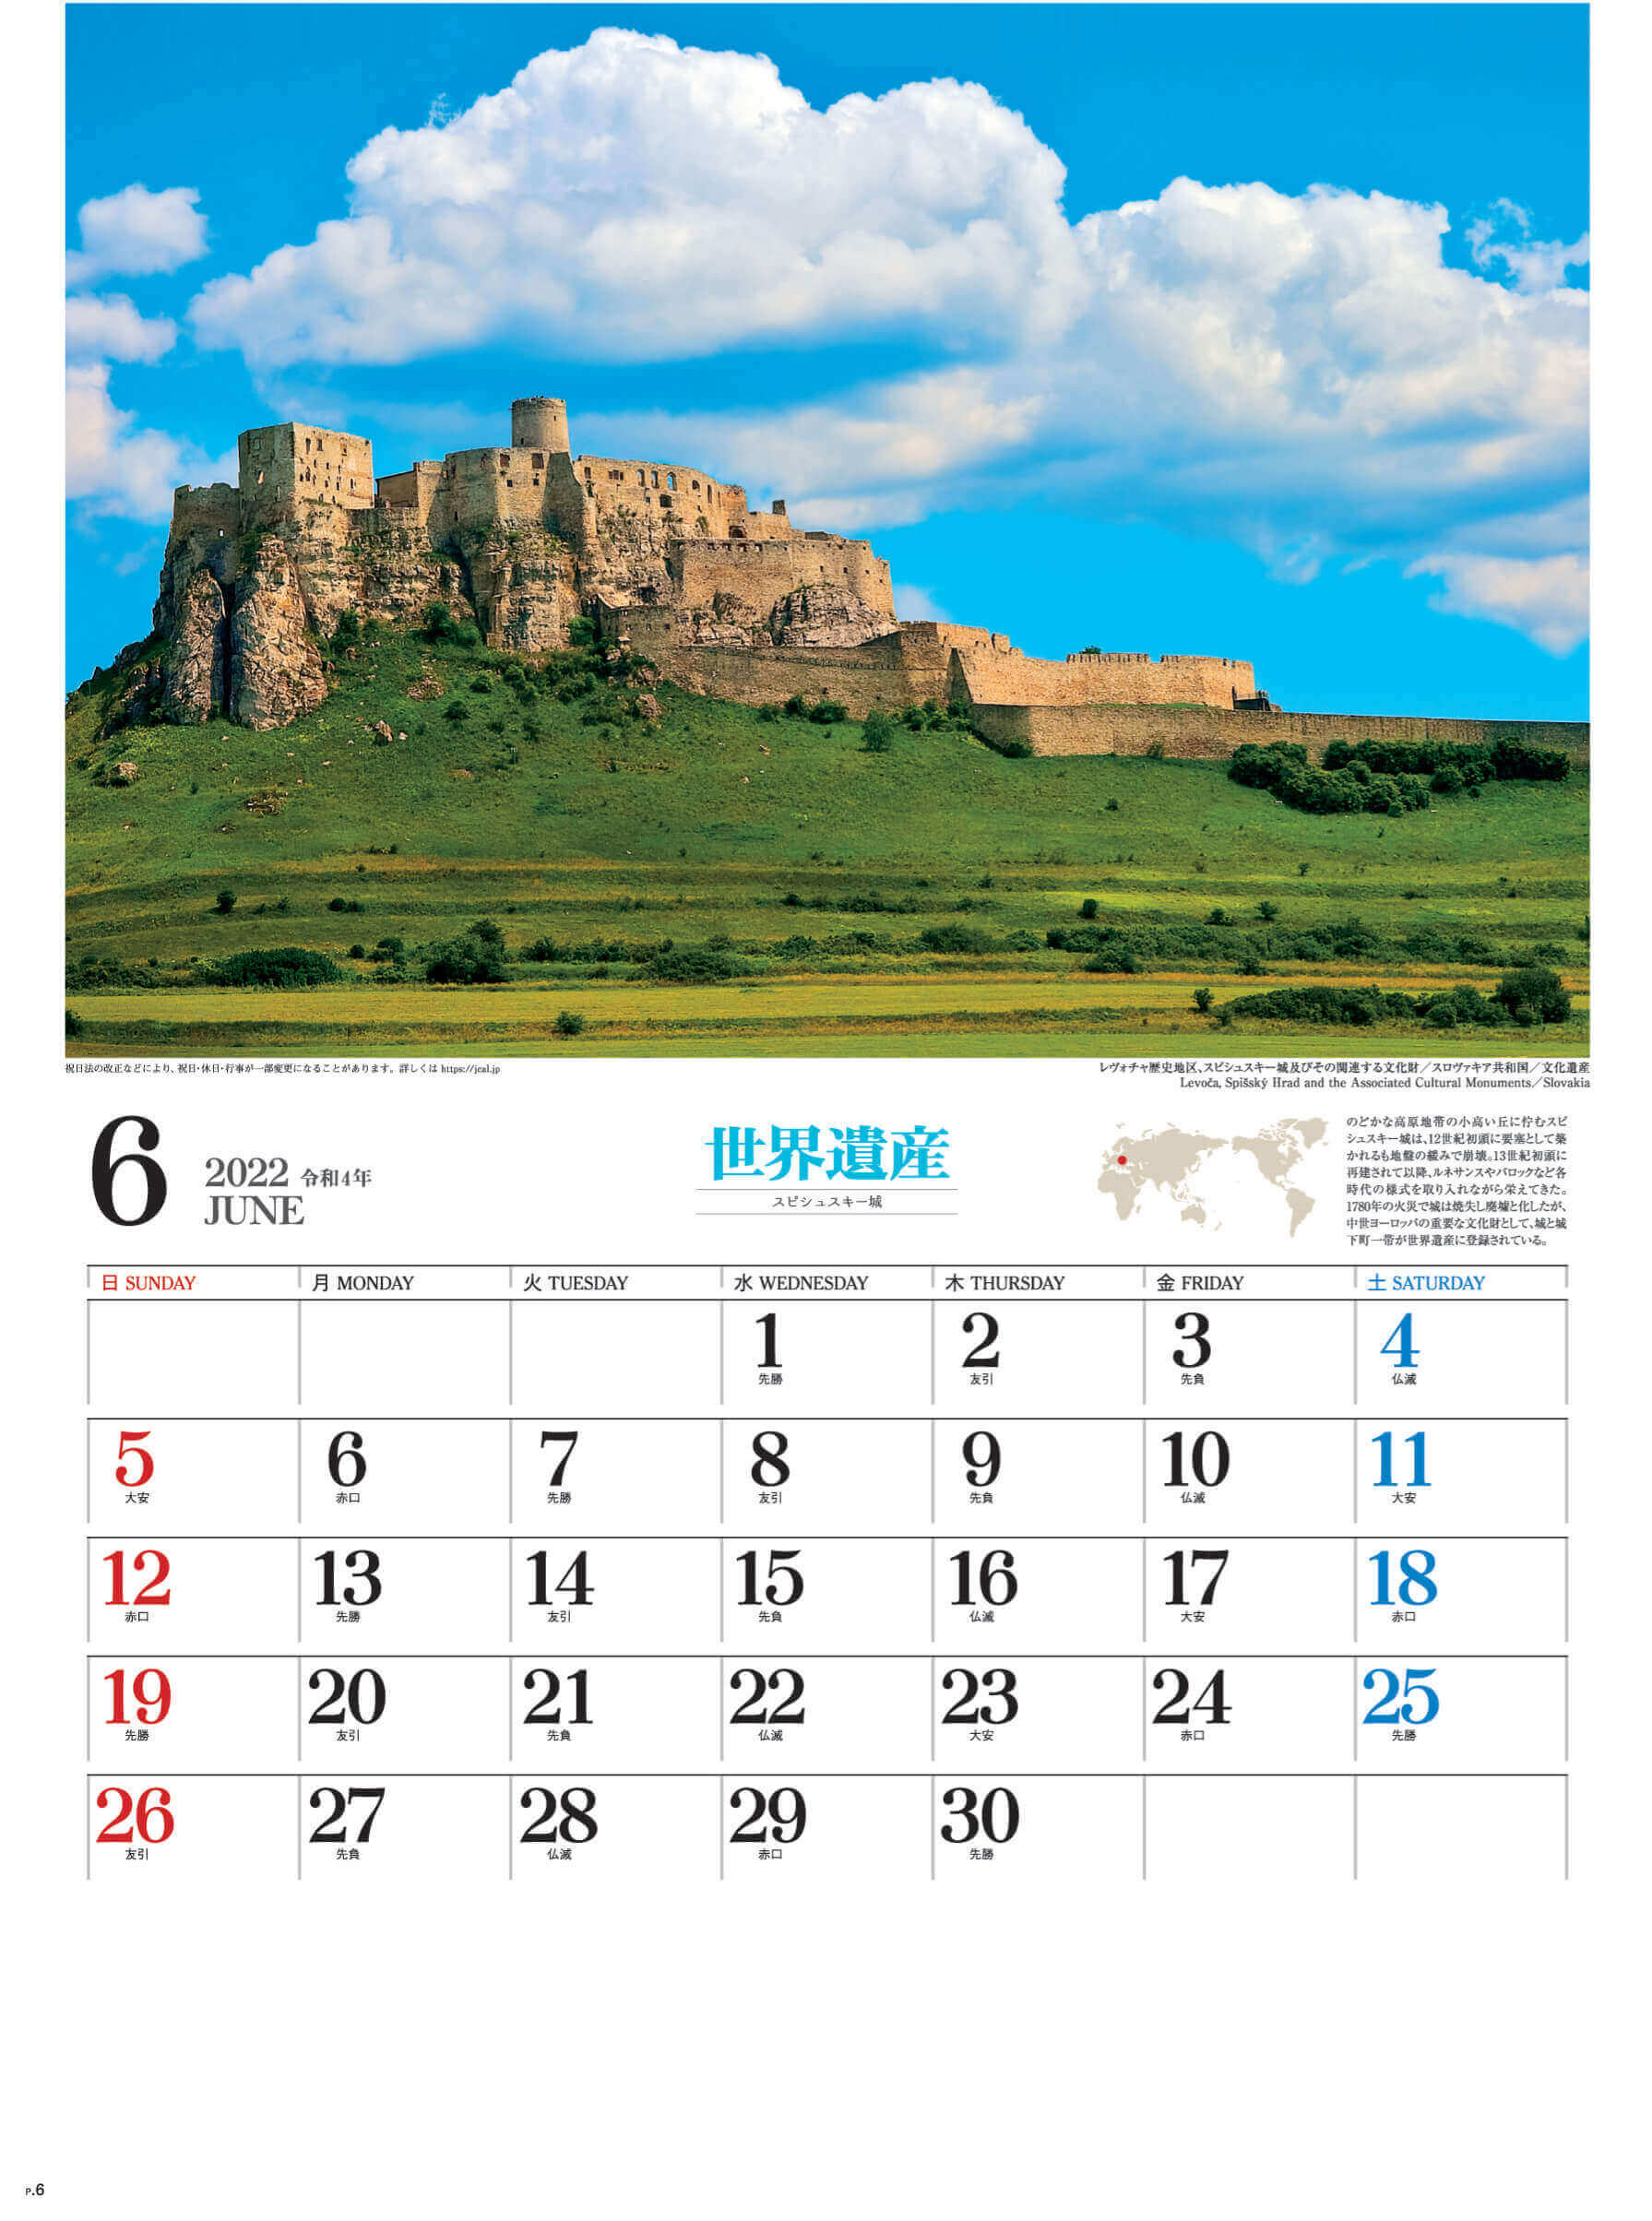 6月 スピシュスキー城 スロバキア ユネスコ世界遺産 2022年カレンダーの画像